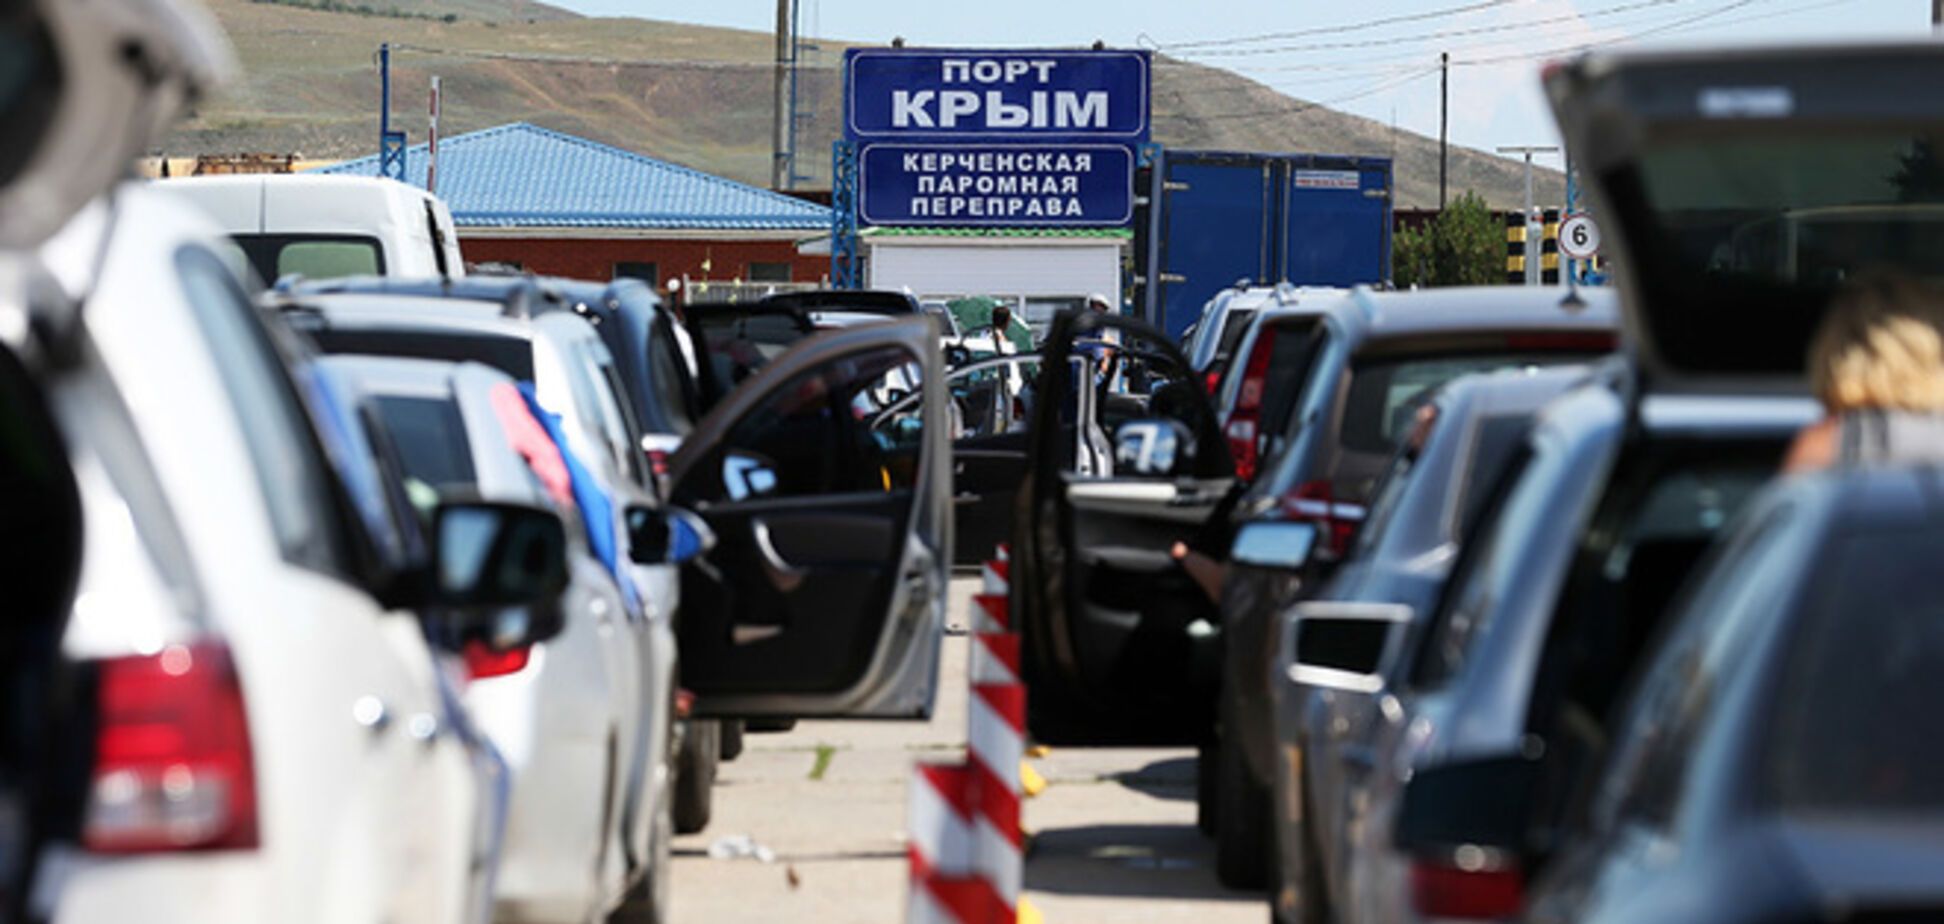 Крымнаш: в Керчи опять застряли больше тысячи автомобилей